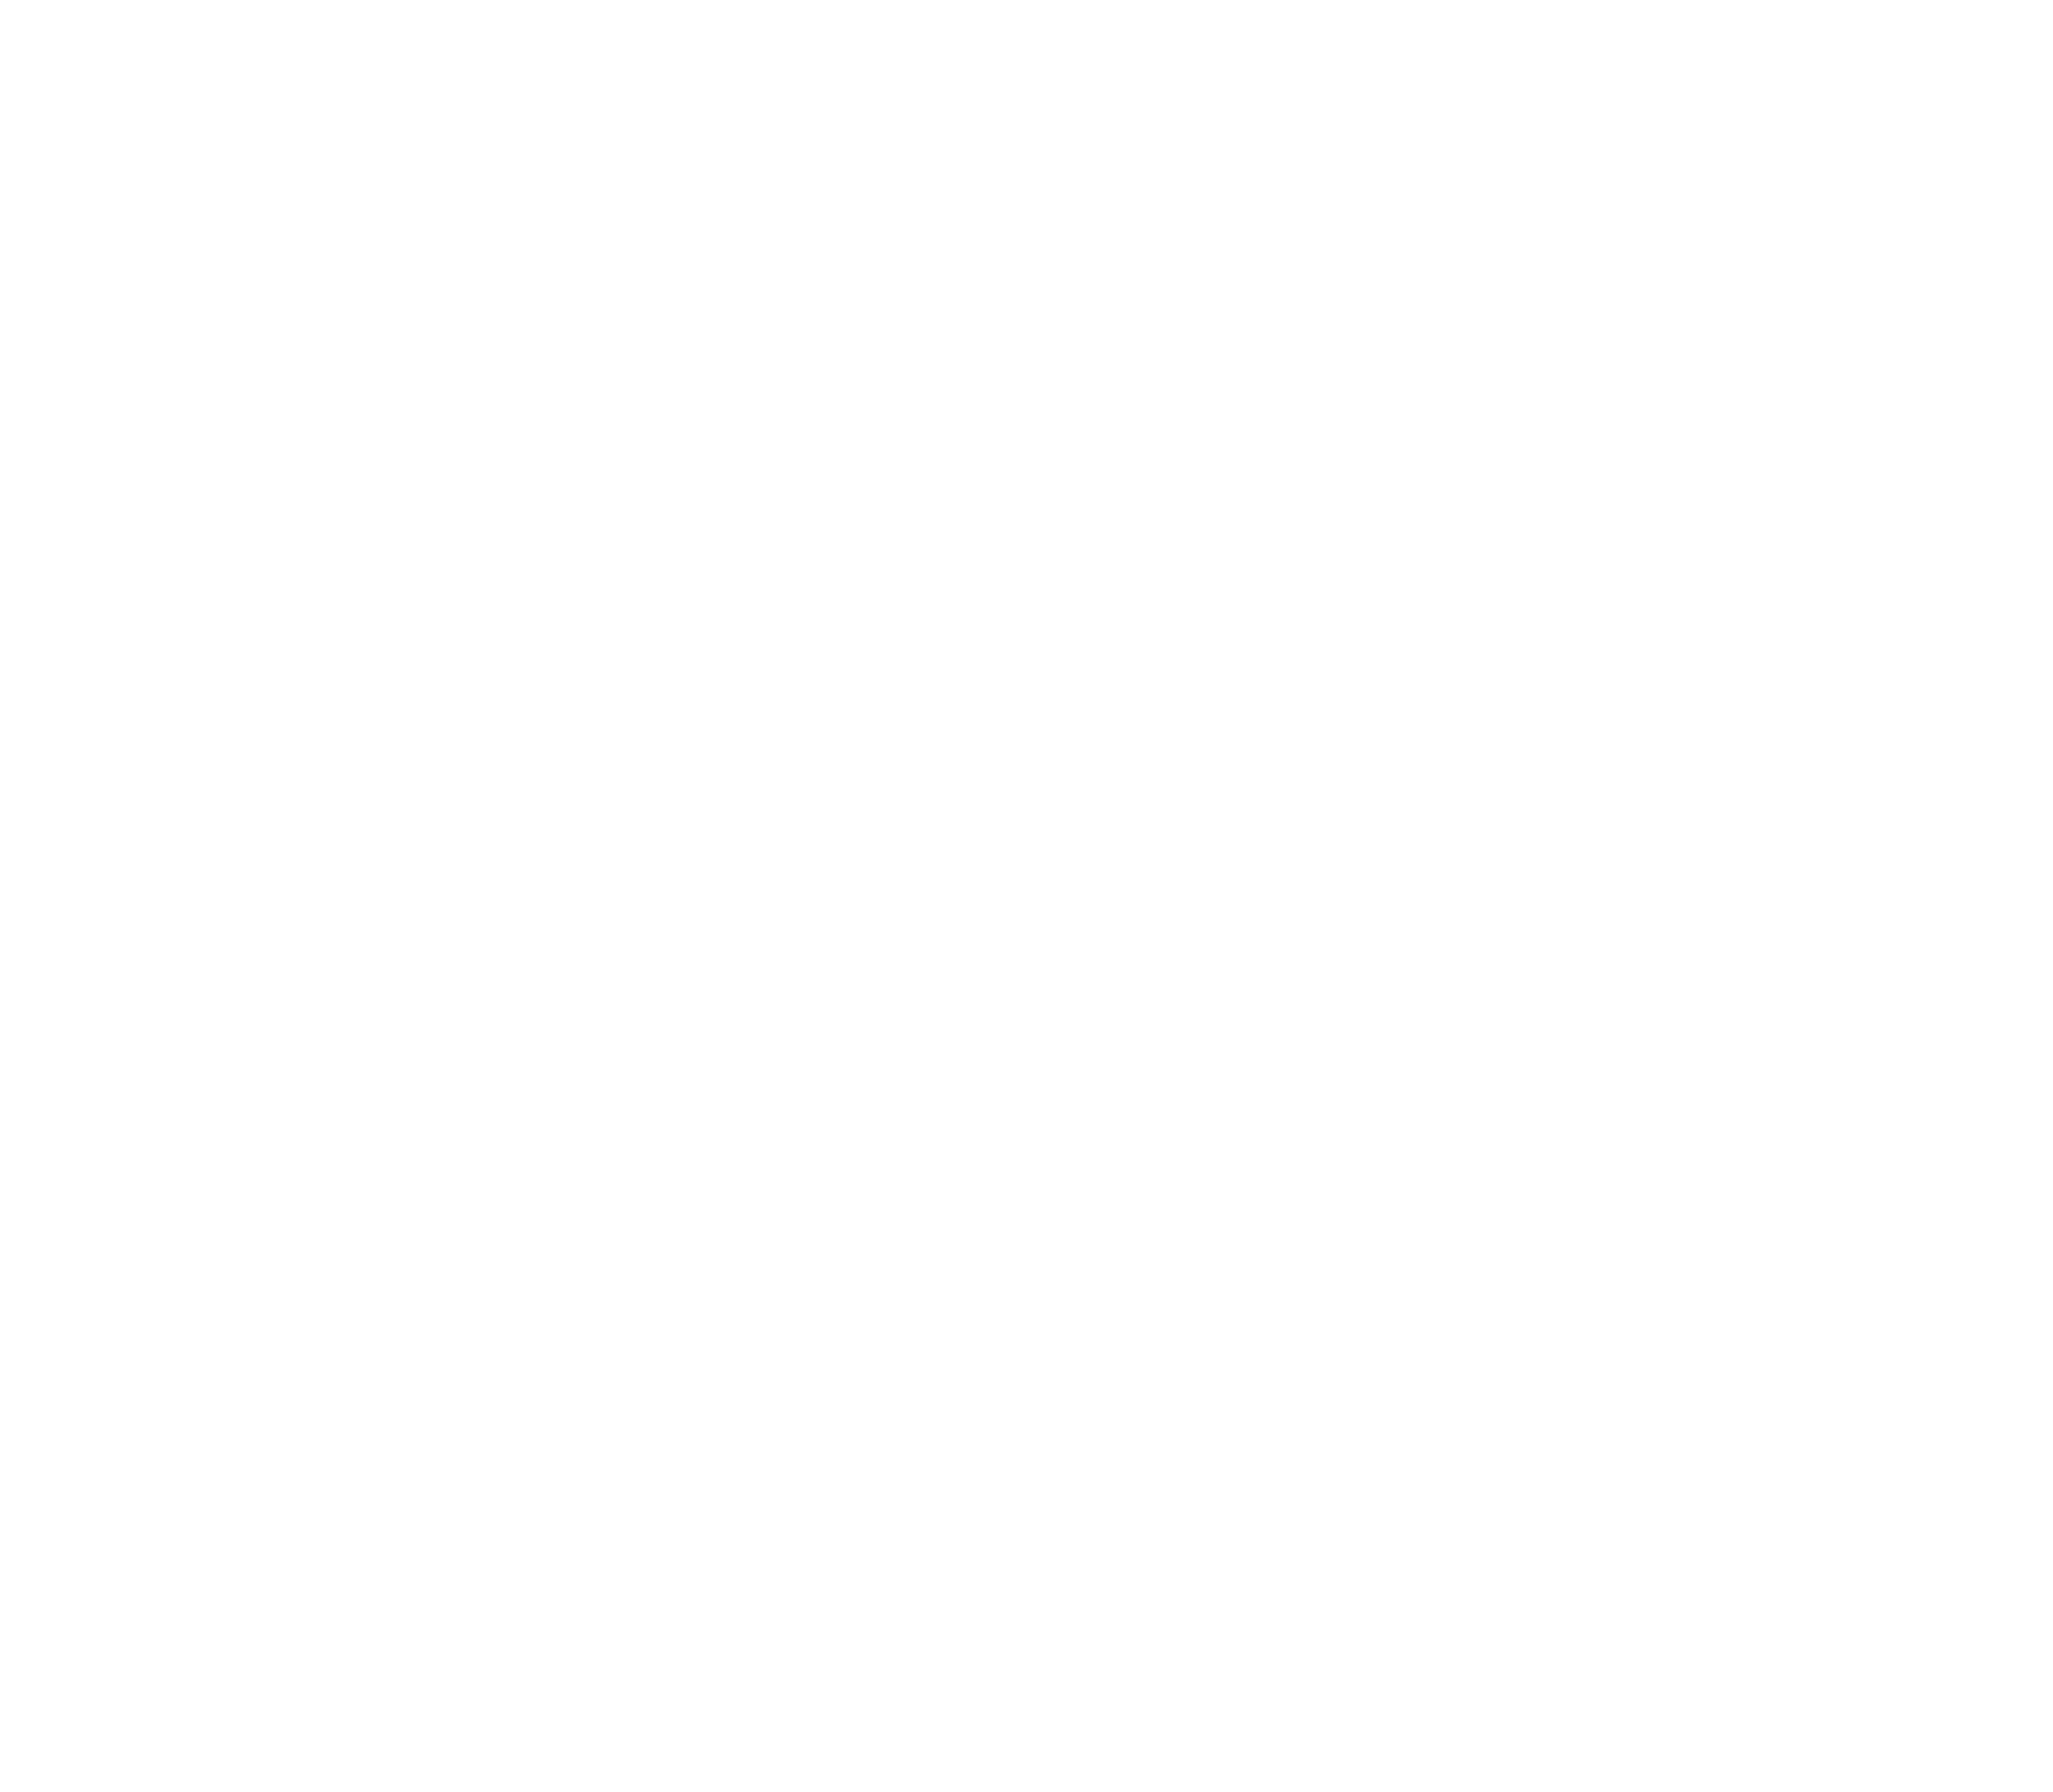 Lukas Lange